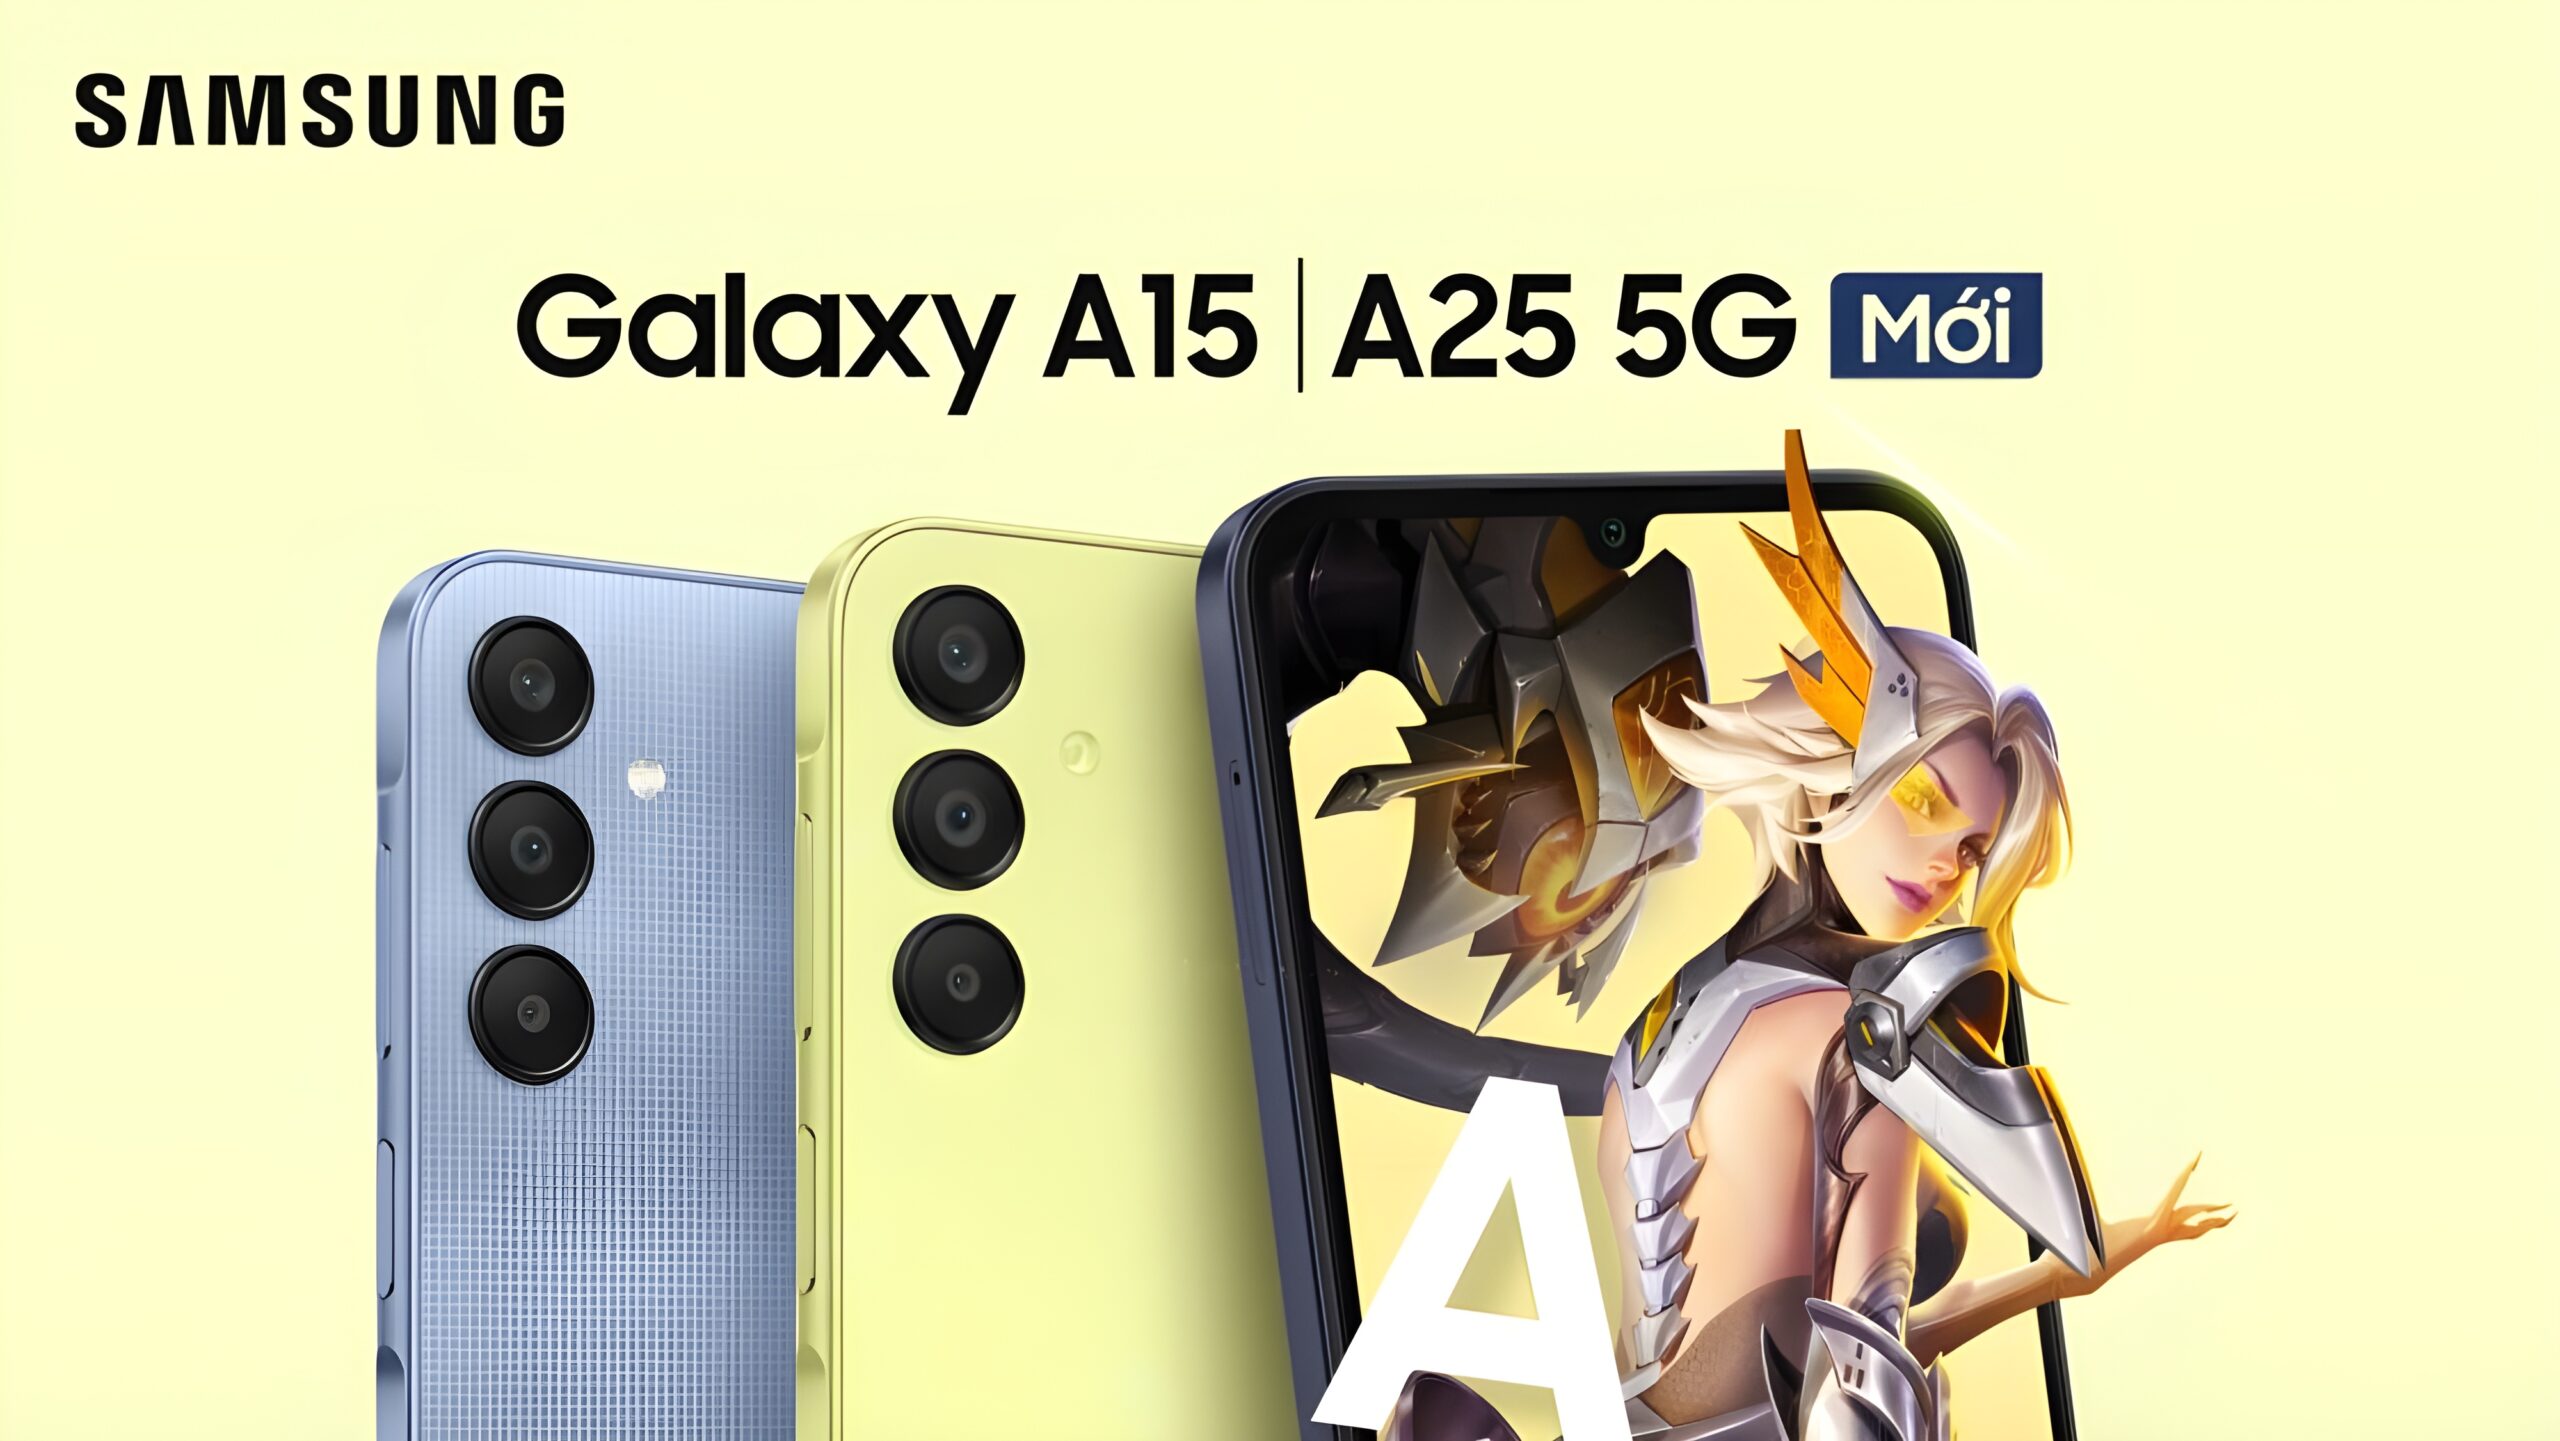 Samsung Galaxy A15 und A25